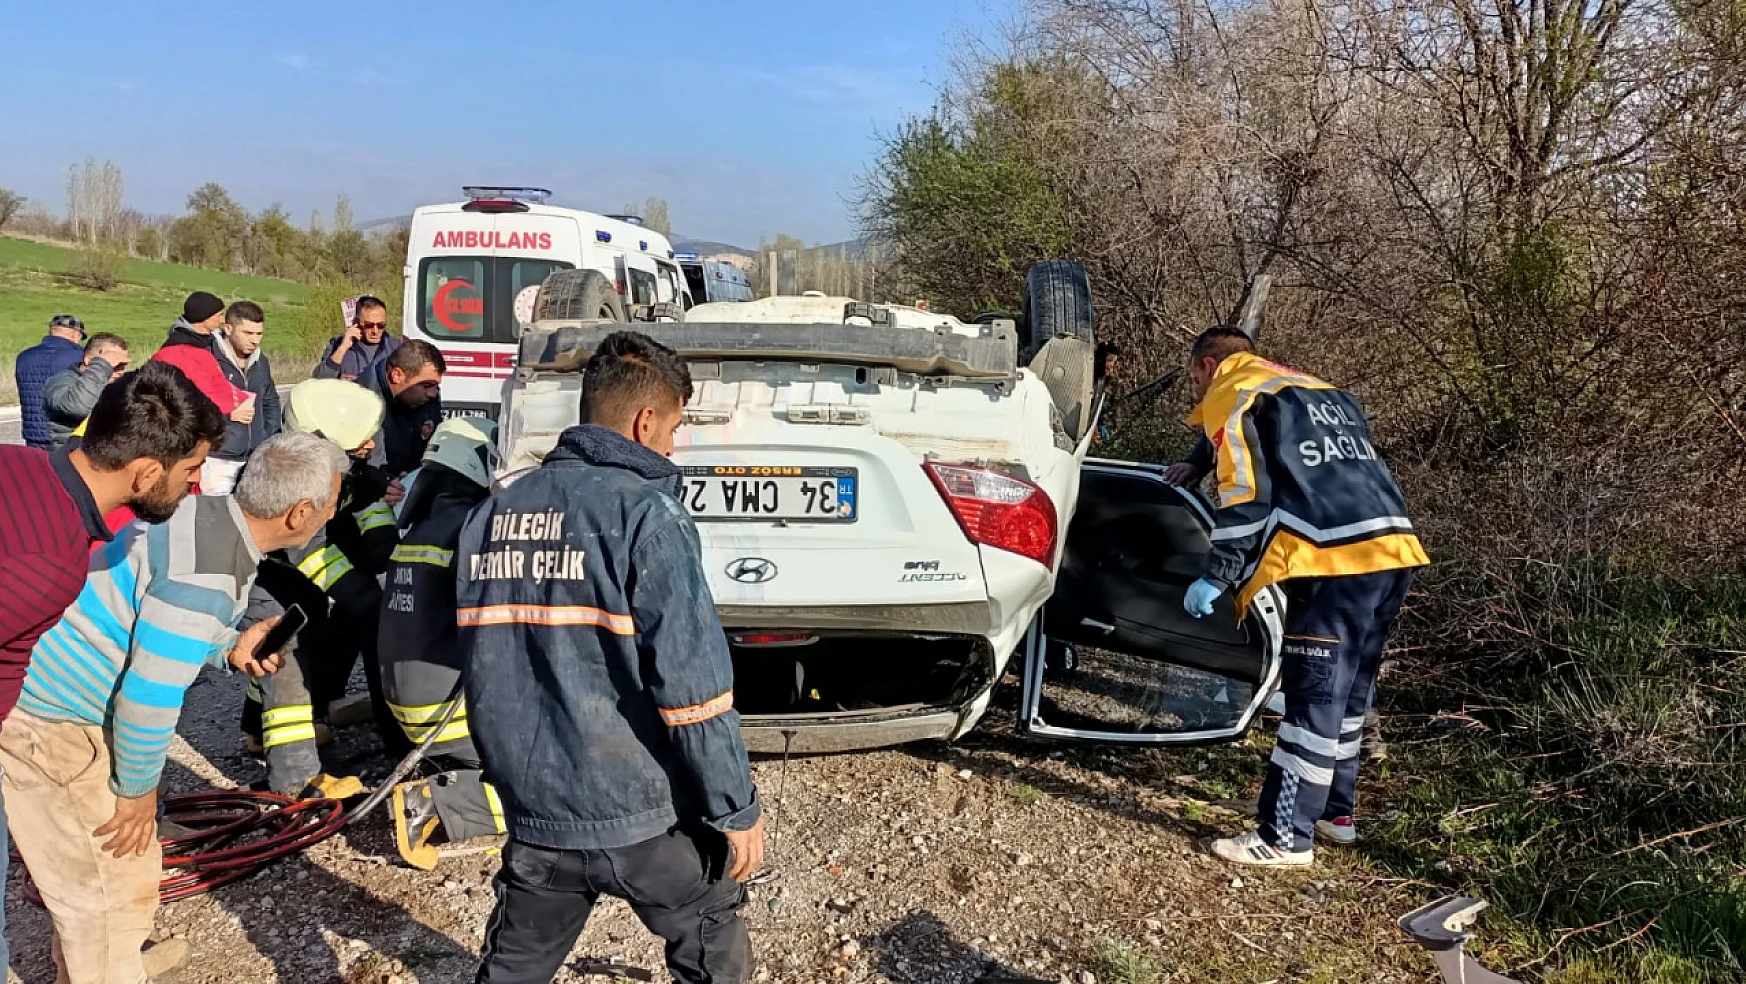 Konya'da otomobil takla attı: 1 ölü, 2 yaralı